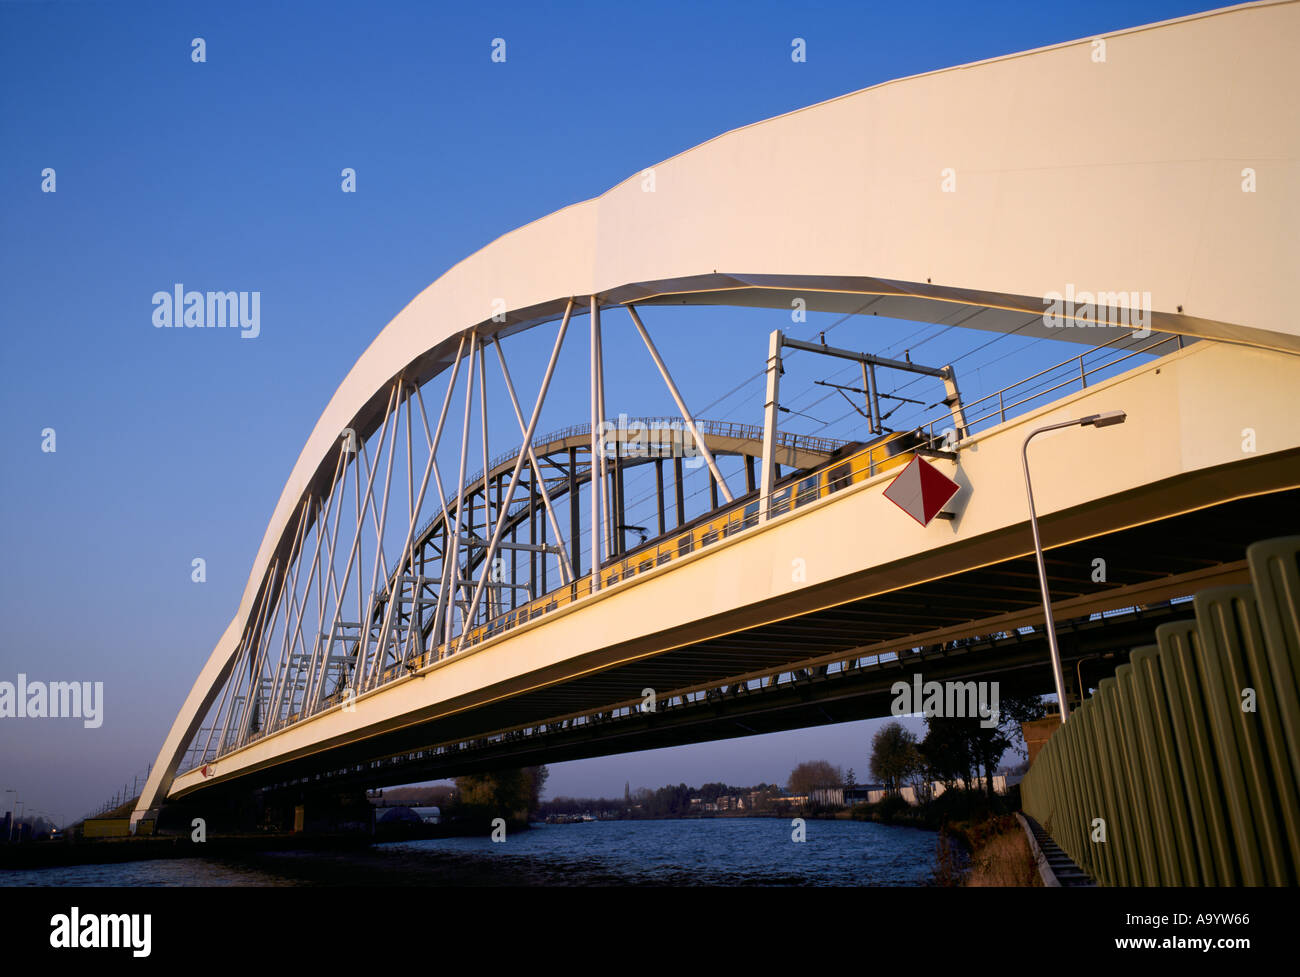 The Werkspoorbrug railway bridge crossing the Amsterdam Rijnkanal at Utrecht Holland Stock Photo